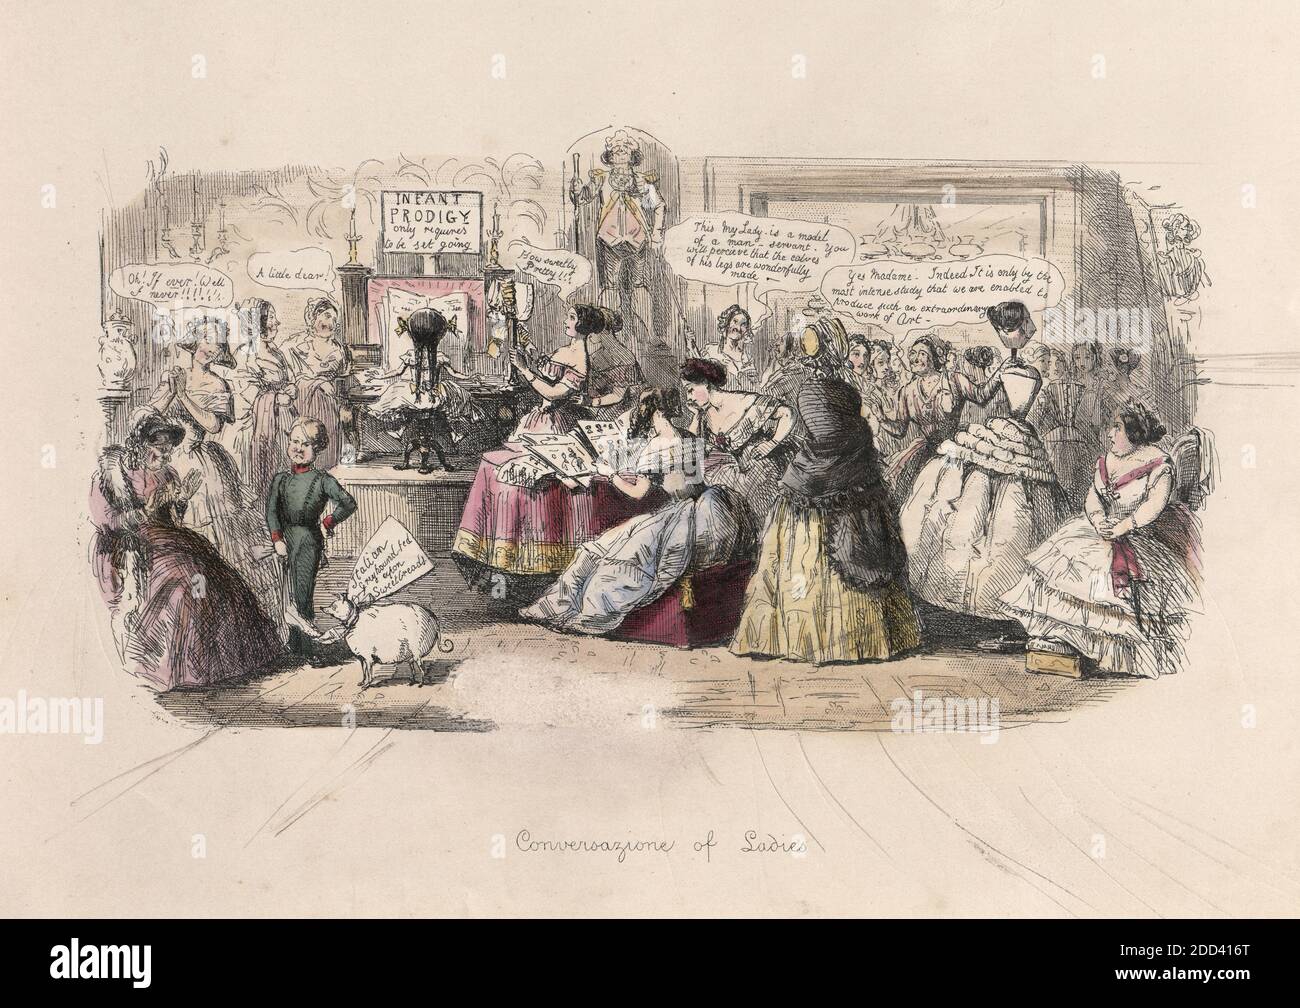 Gravure vintage de conversations de dames, 1848, par John Leech (caricaturiste) caricatures de Victorians. Cartoob satirique de dames dans un salon de la mode, les enfants, les chiens et les hommes Banque D'Images